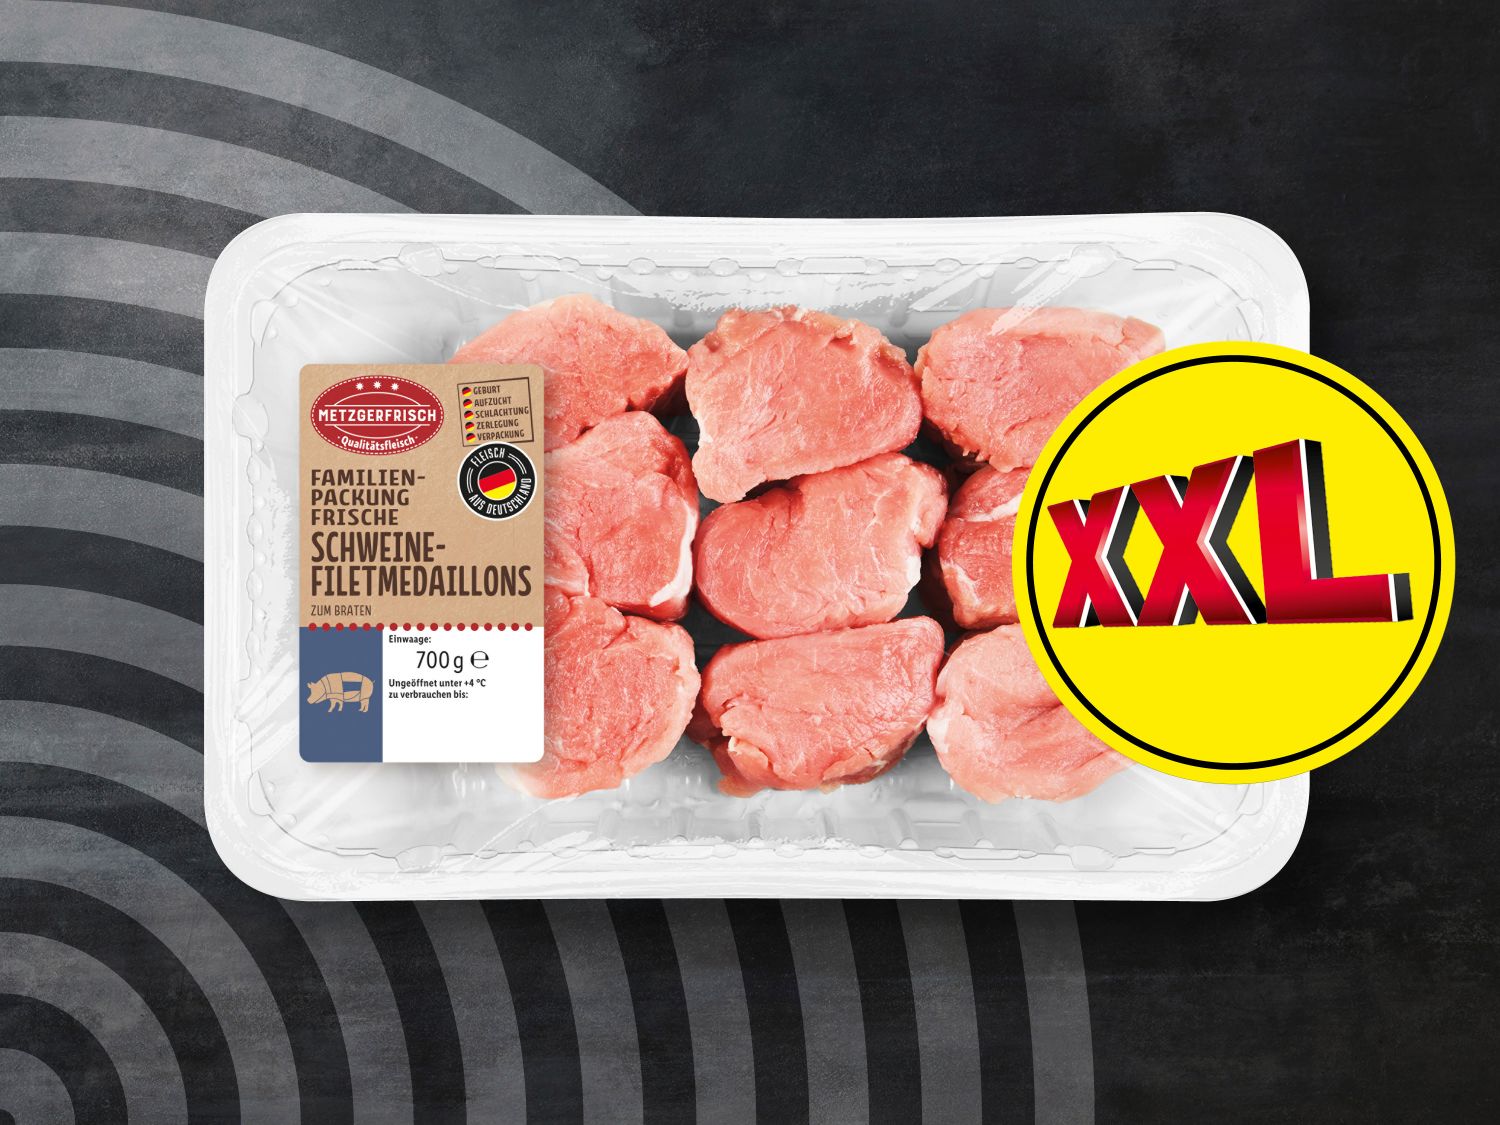 XXL Frische Metzgerfrisch - Schweine-Filetmedaillons